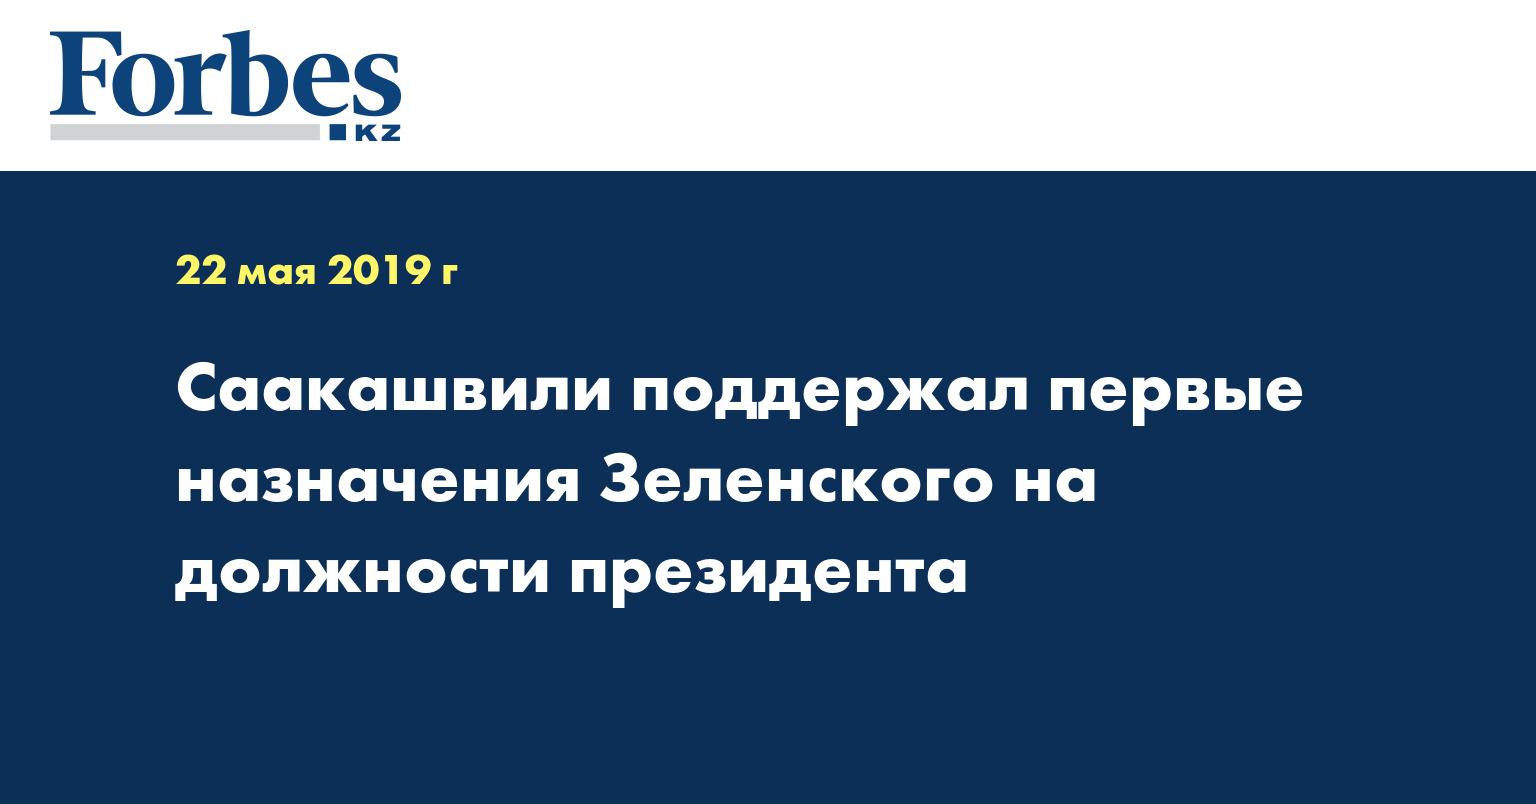 Саакашвили поддержал первые назначения Зеленского на должности президента